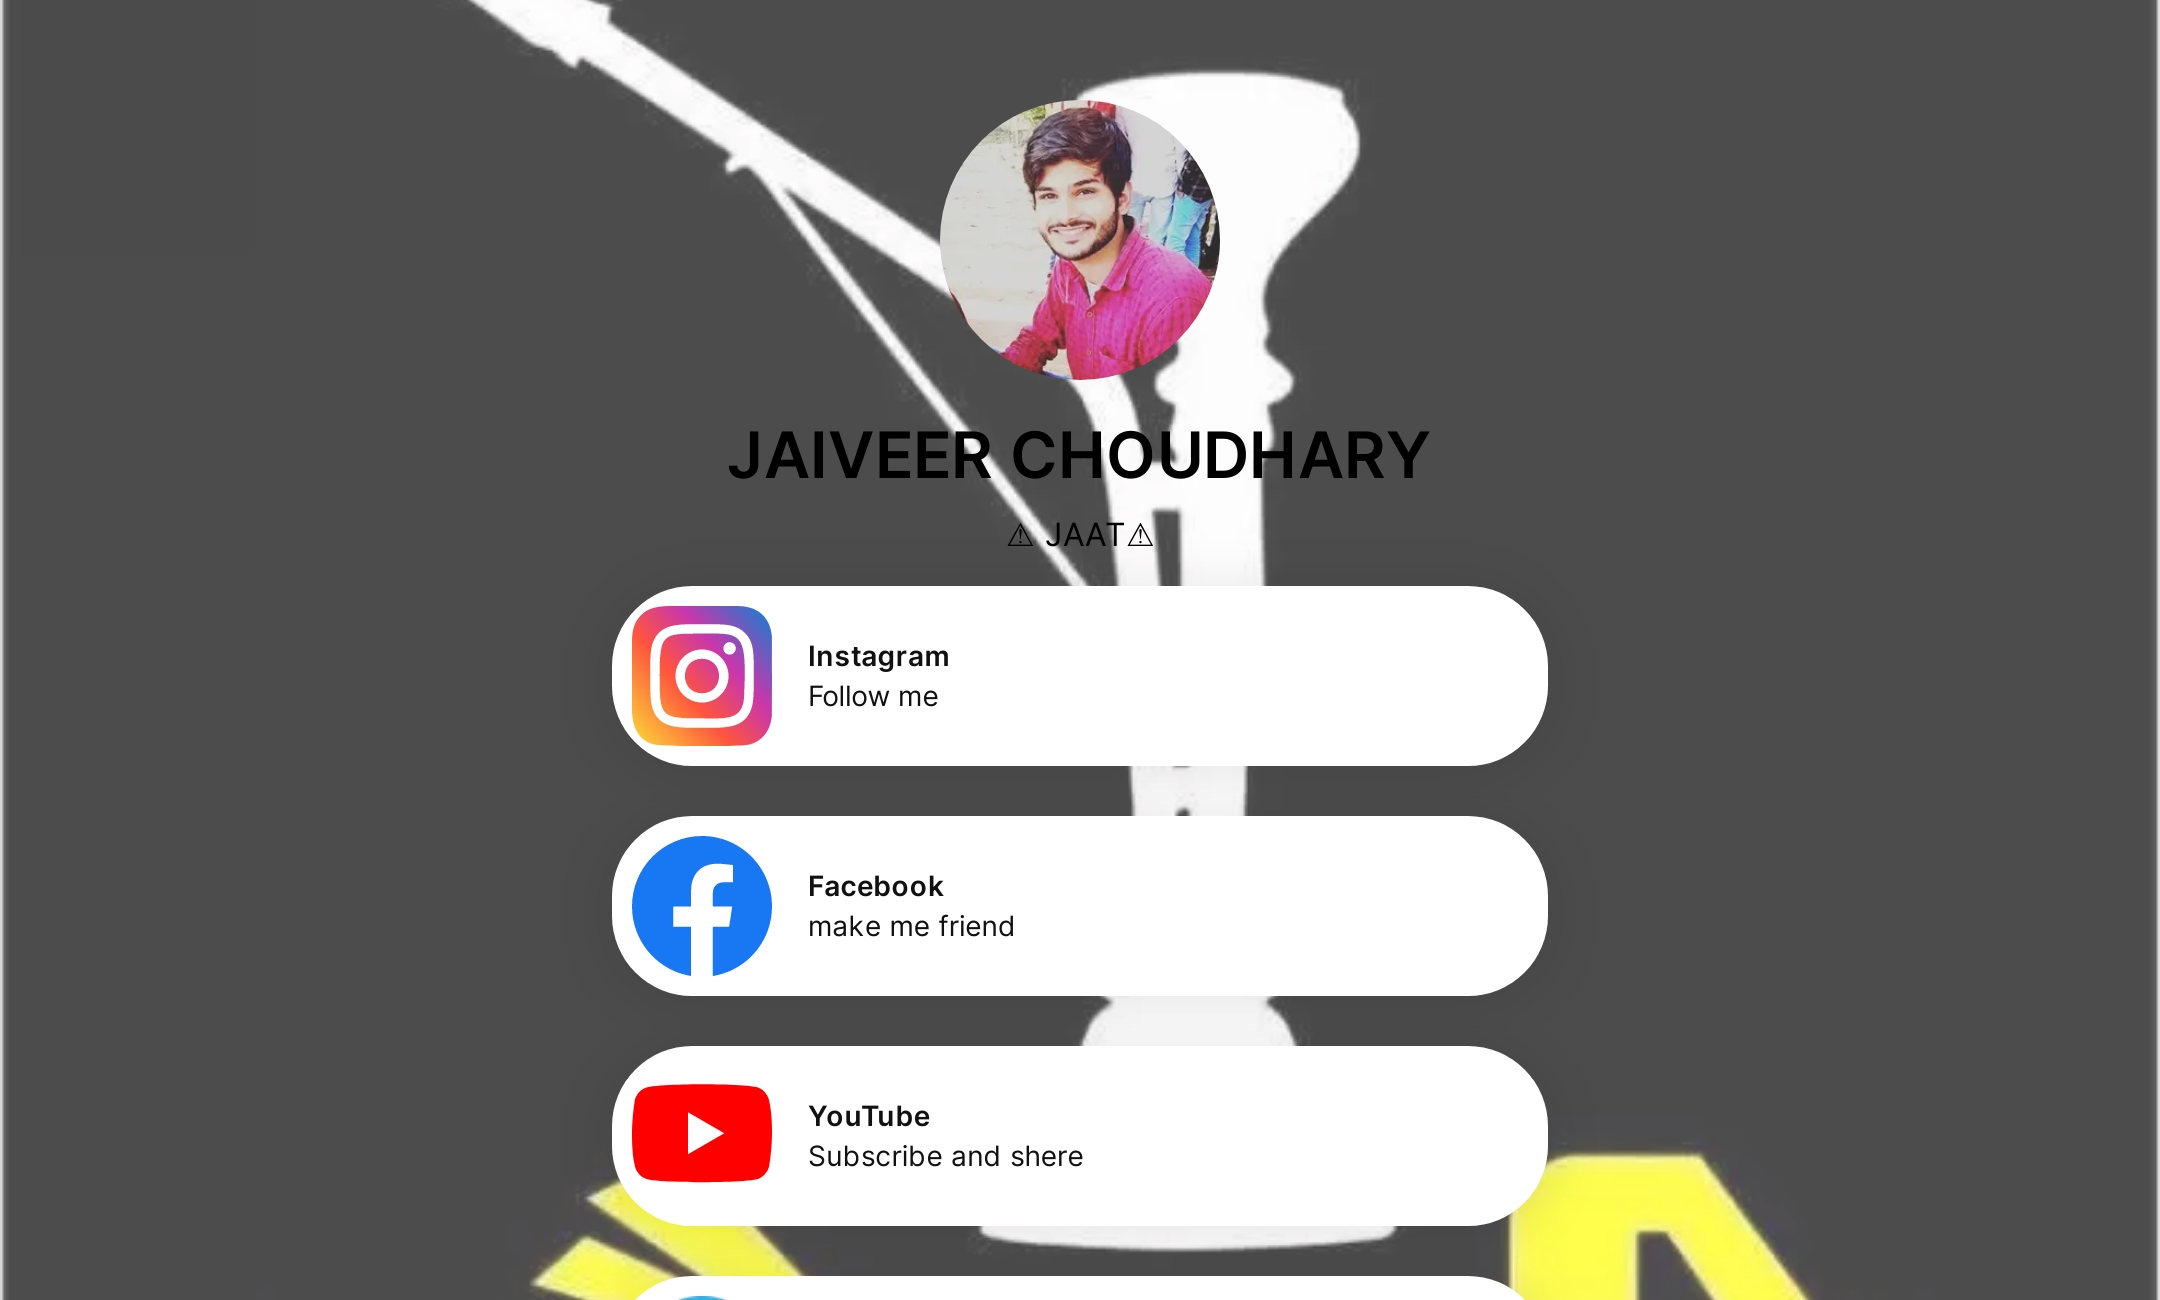 JAIVEER CHOUDHARY's Flowpage